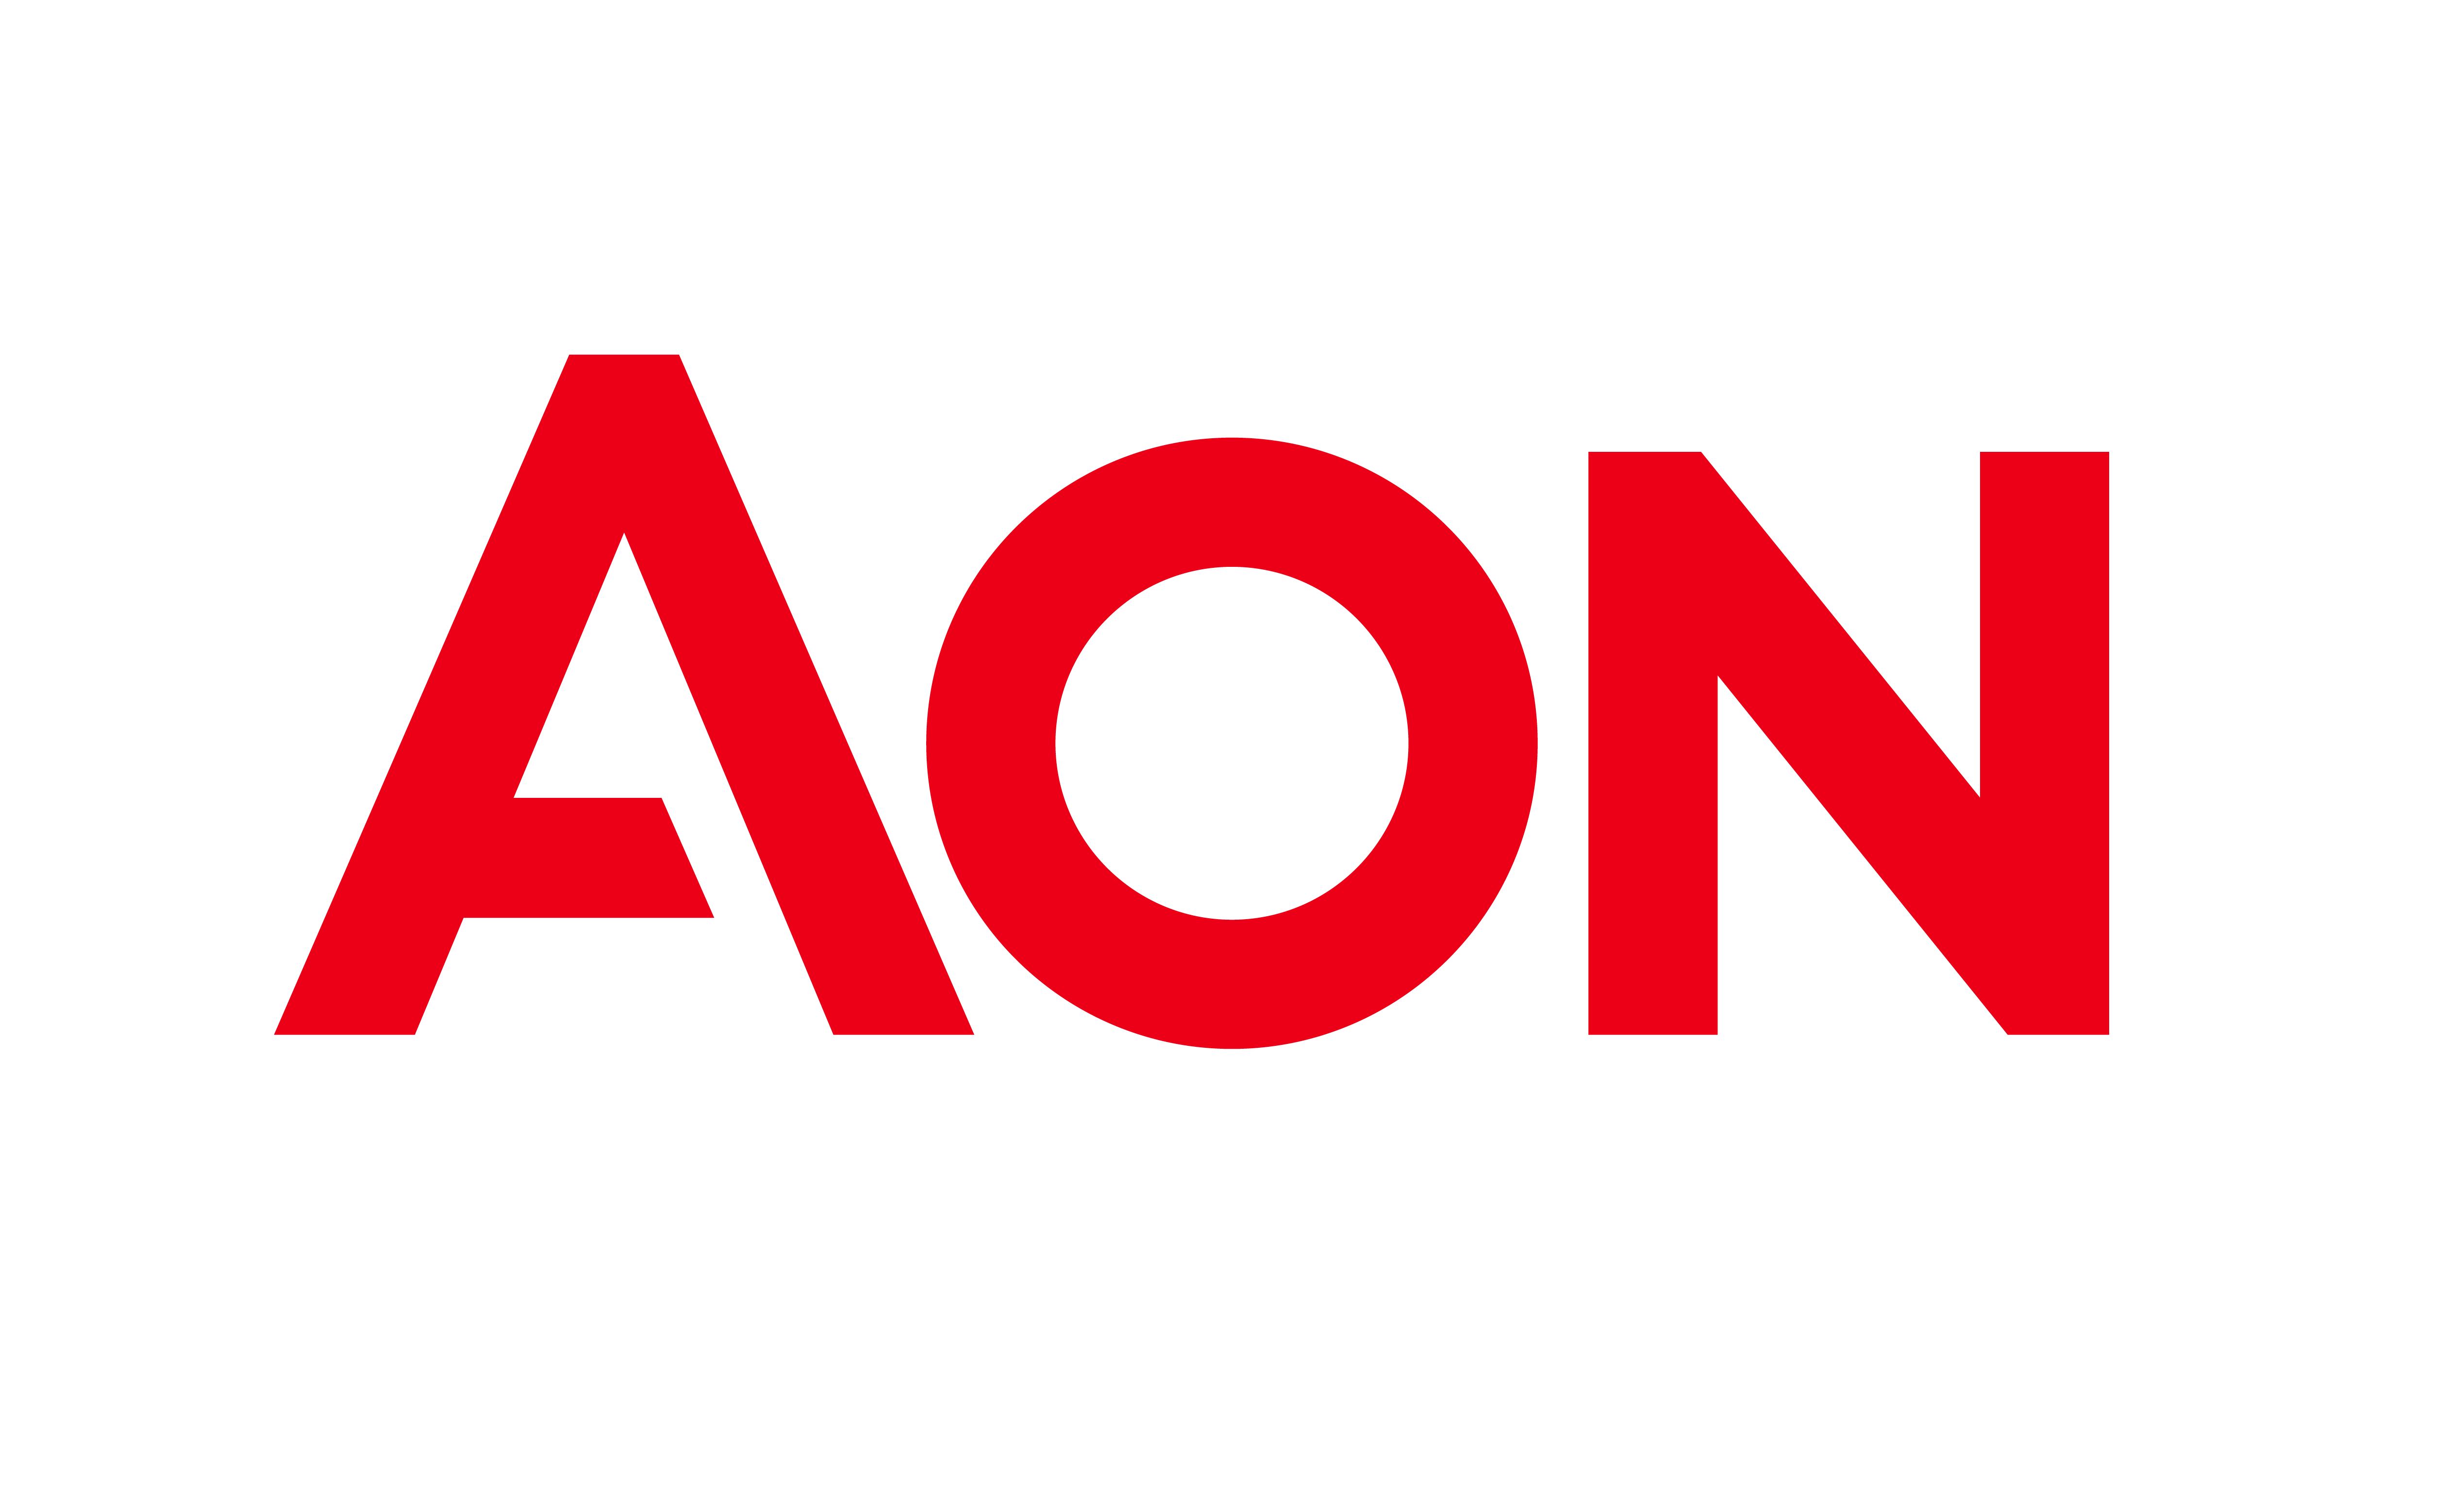 Red AON logo